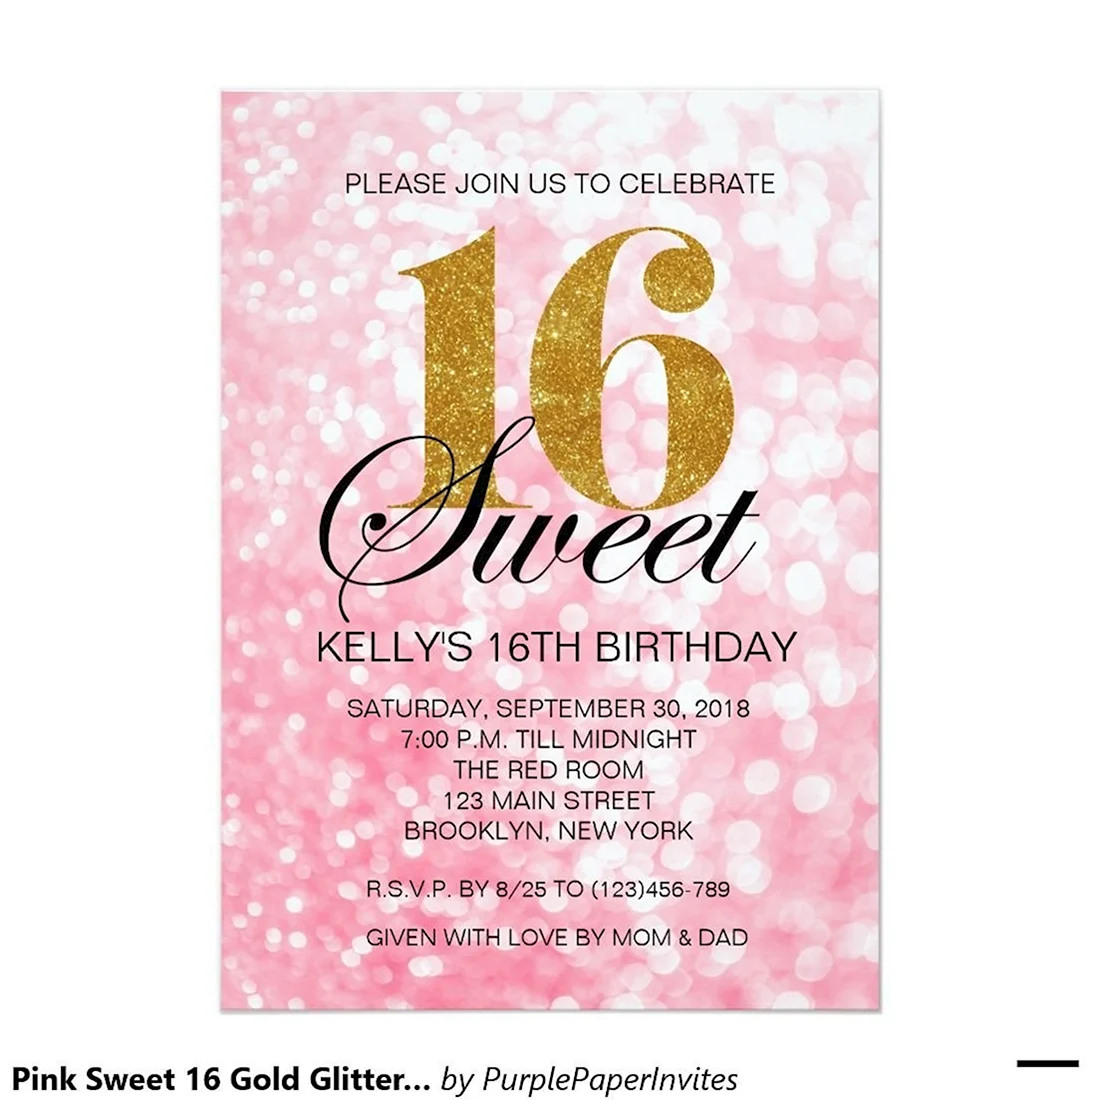 Приглашение на Sweet 16. Открытка с поздравлением